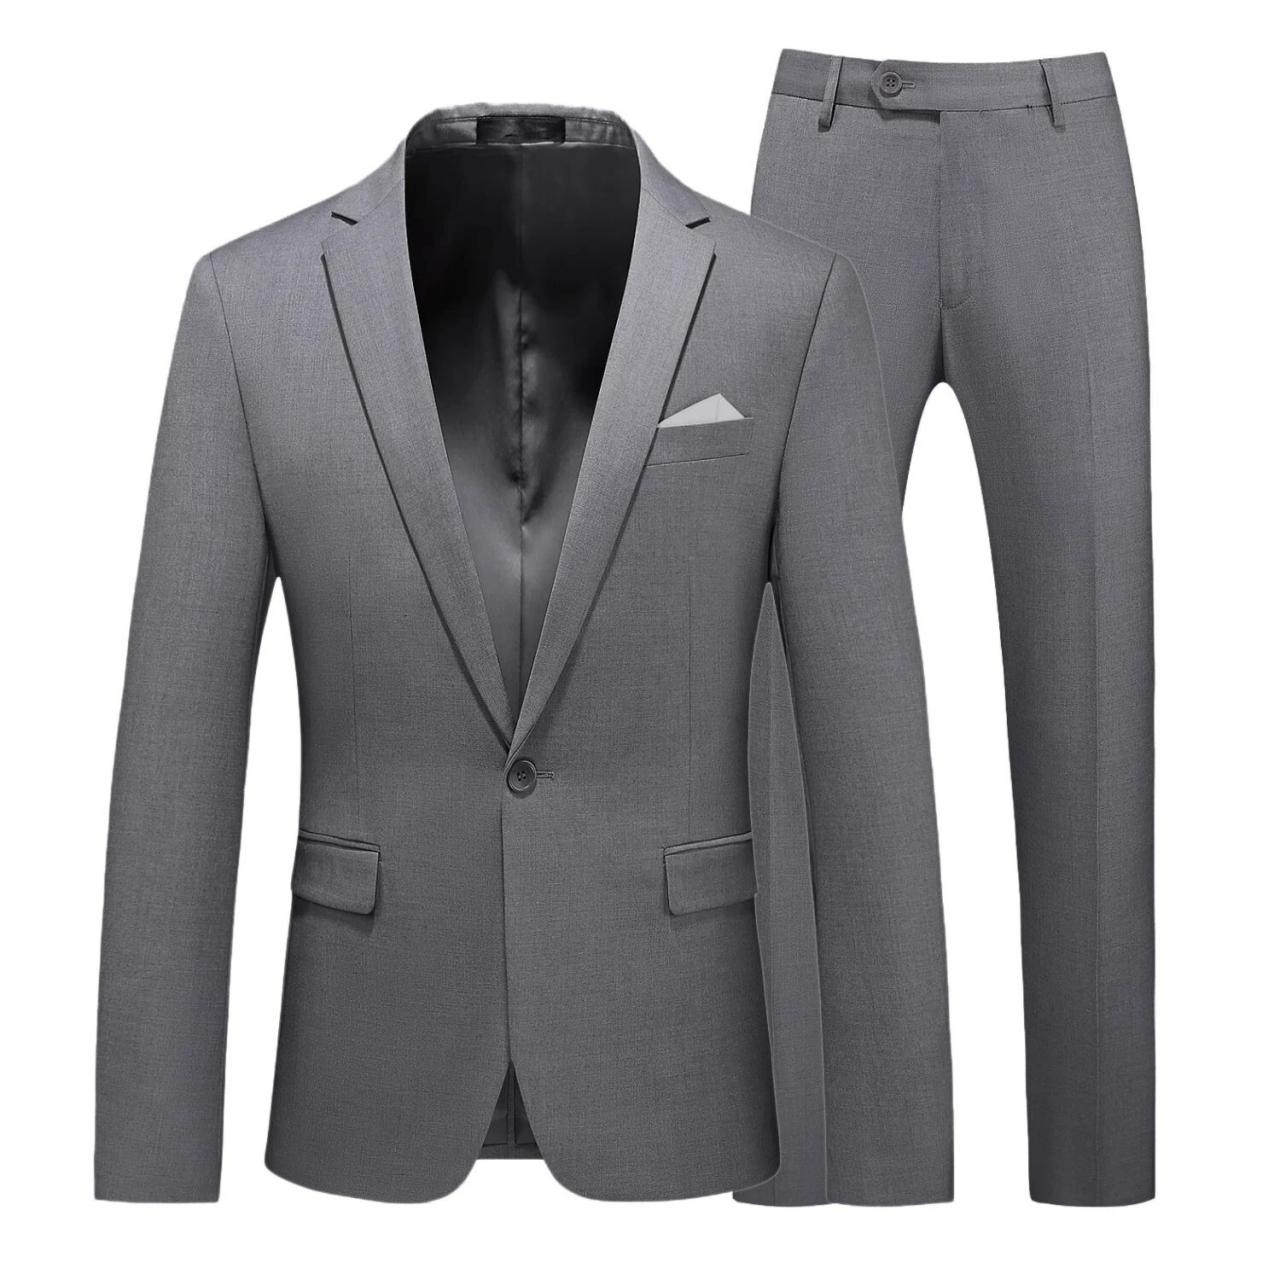 Men's Business High Quality Gentleman Black 2 Piece Suit Set Blazers Coat Jacket Pants Classic Trousers Ms217